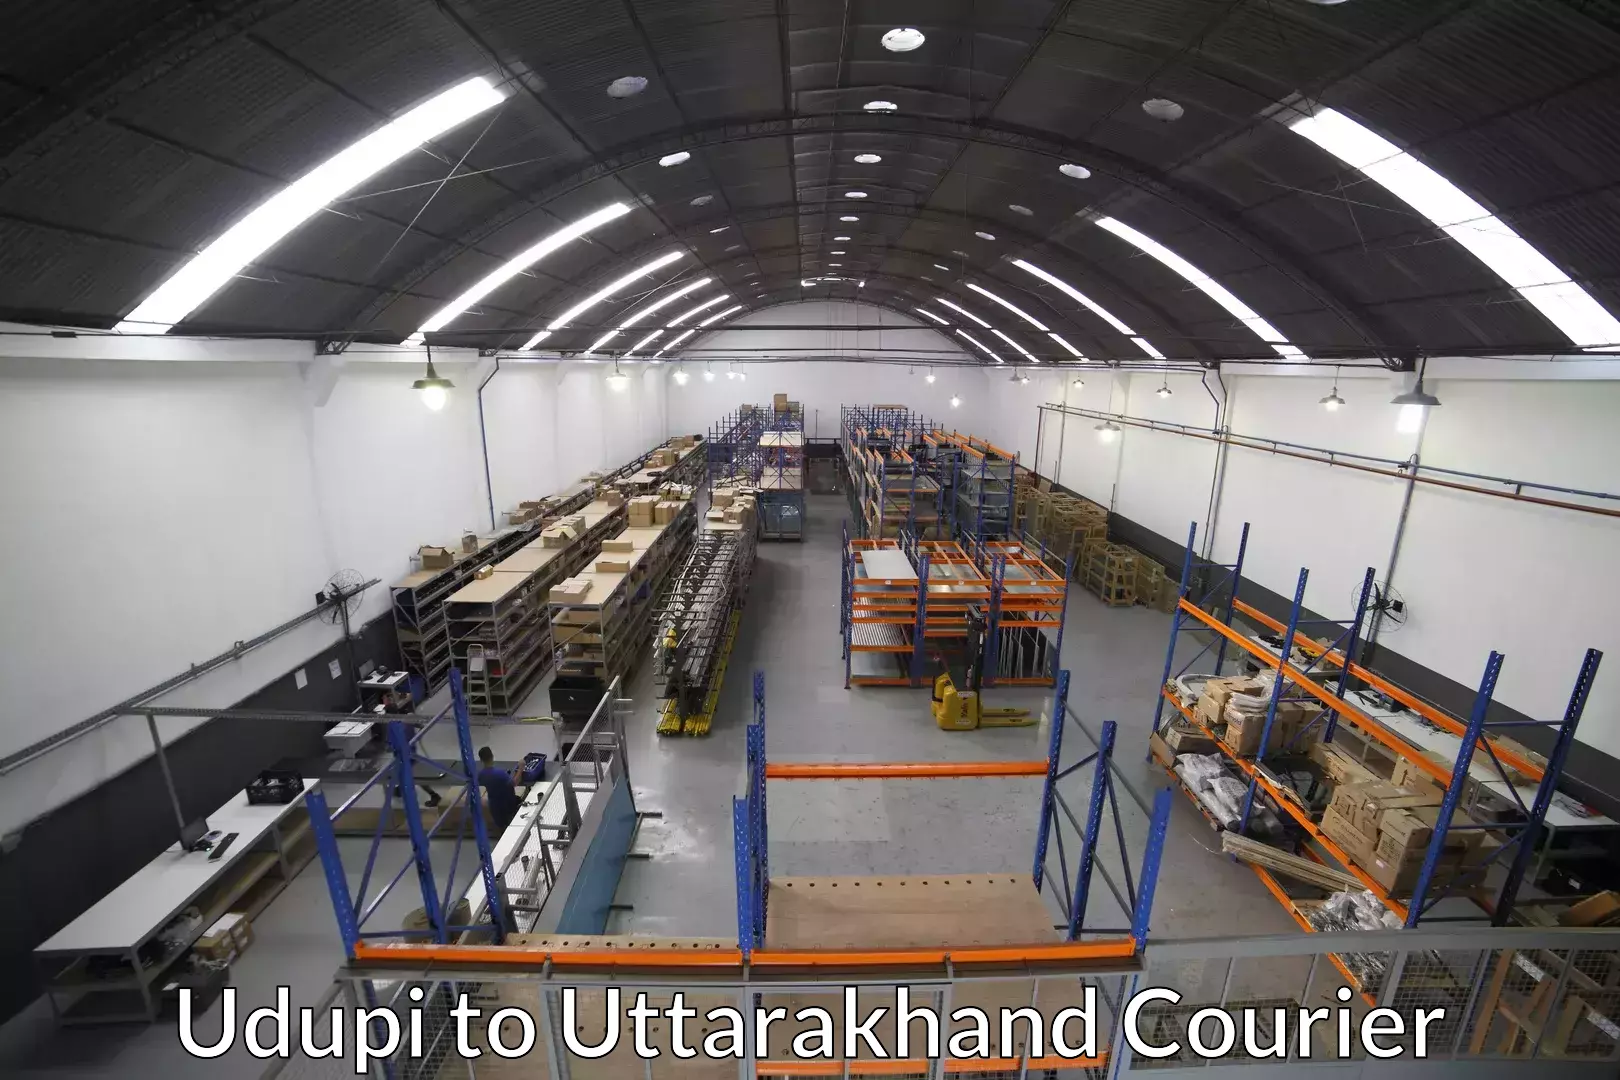 Full-service movers Udupi to Uttarakhand